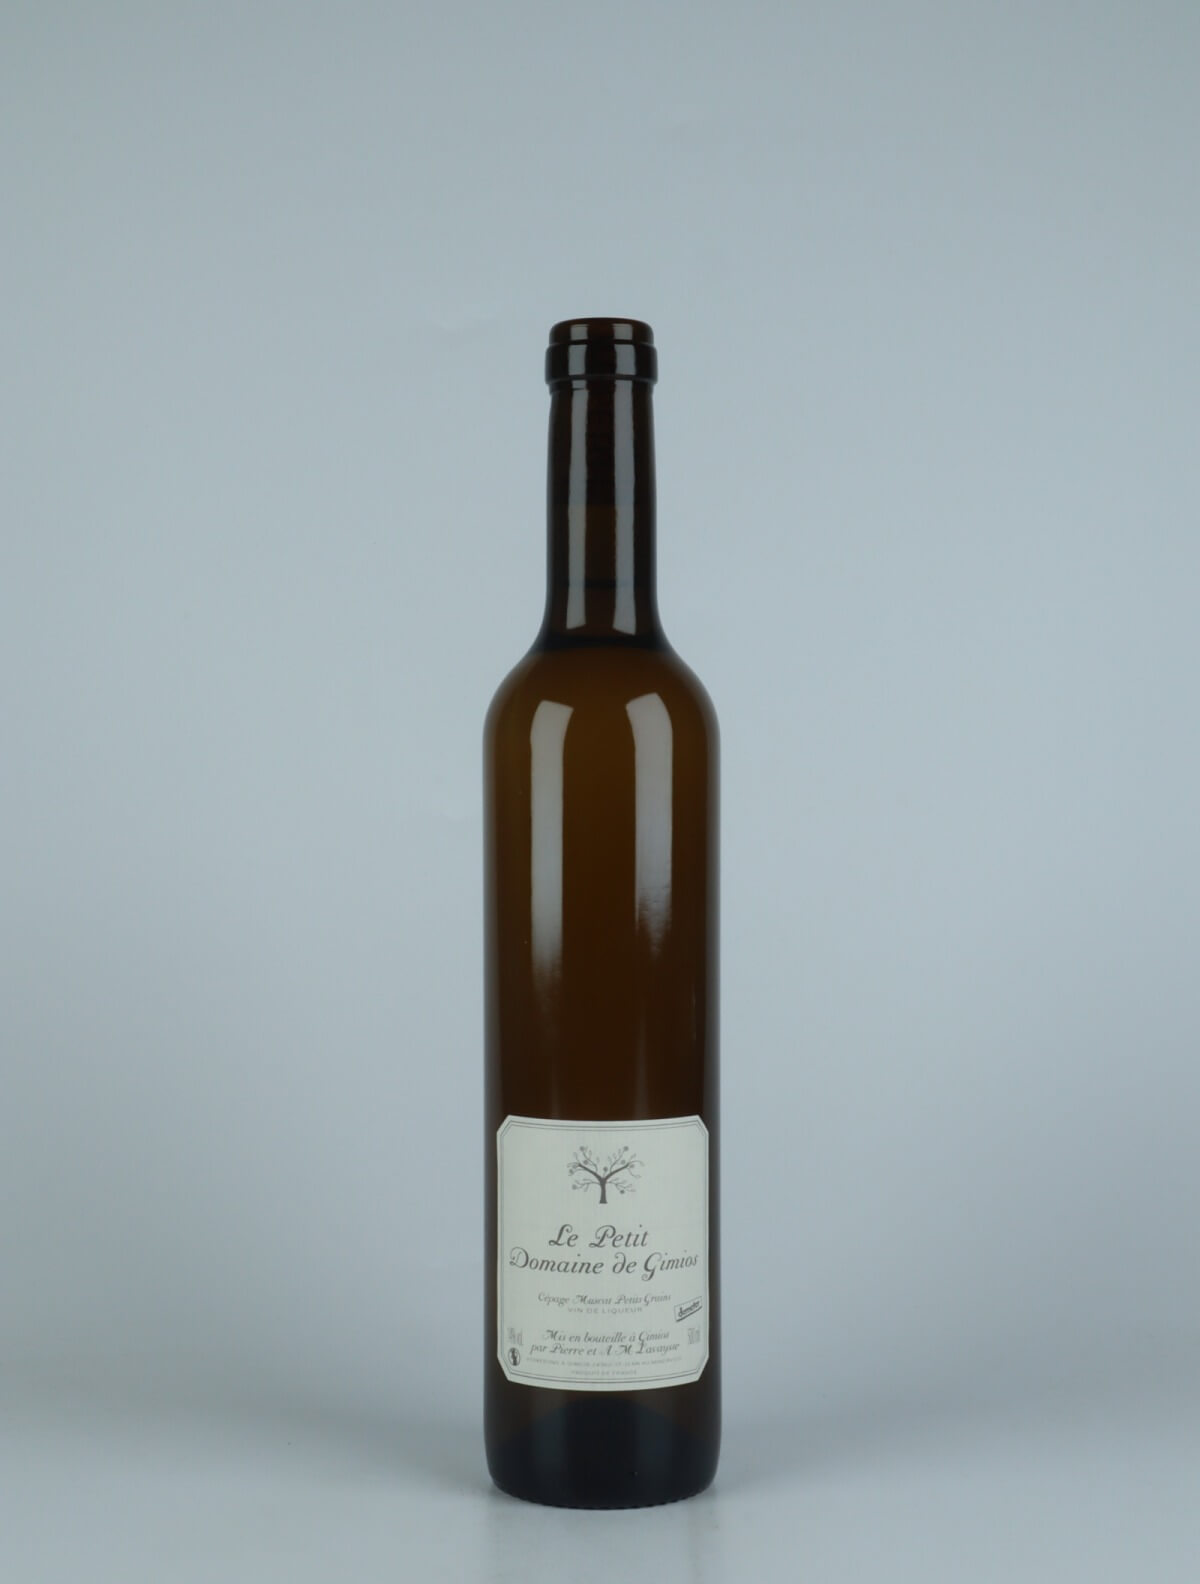 A bottle 2019 Vin Doux Naturel Sweet wine from Le Petit Domaine de Gimios, Rousillon in France